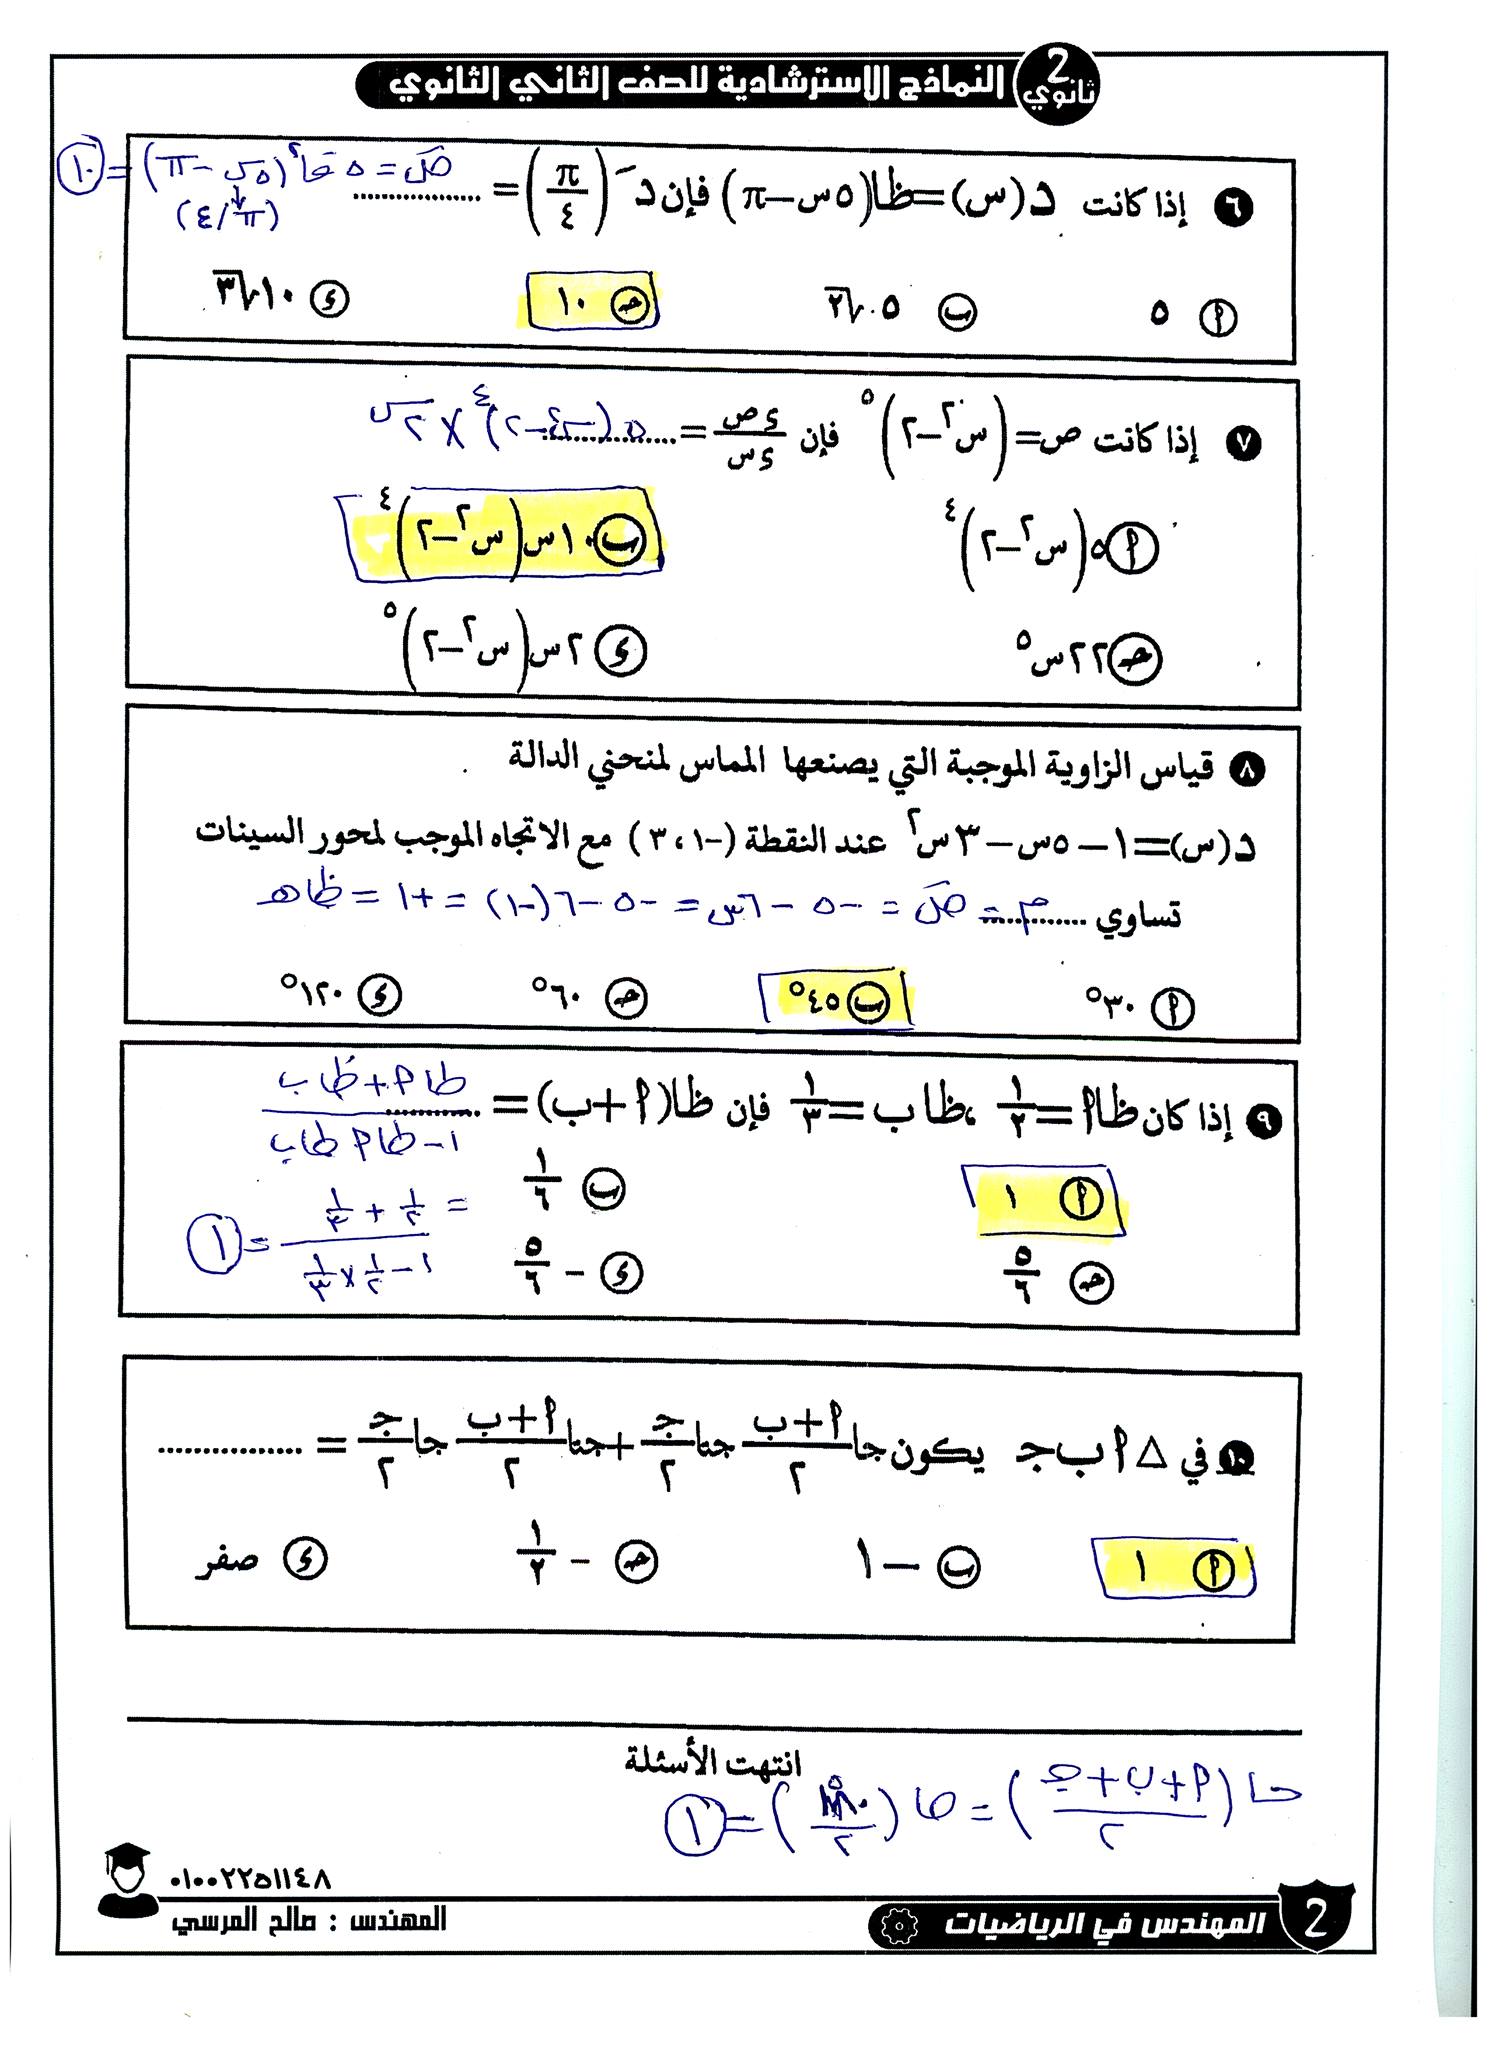 مراجعة ليلة امتحان الرياضيات البحتة للصف الثاني الثانوي بالاجابات 2